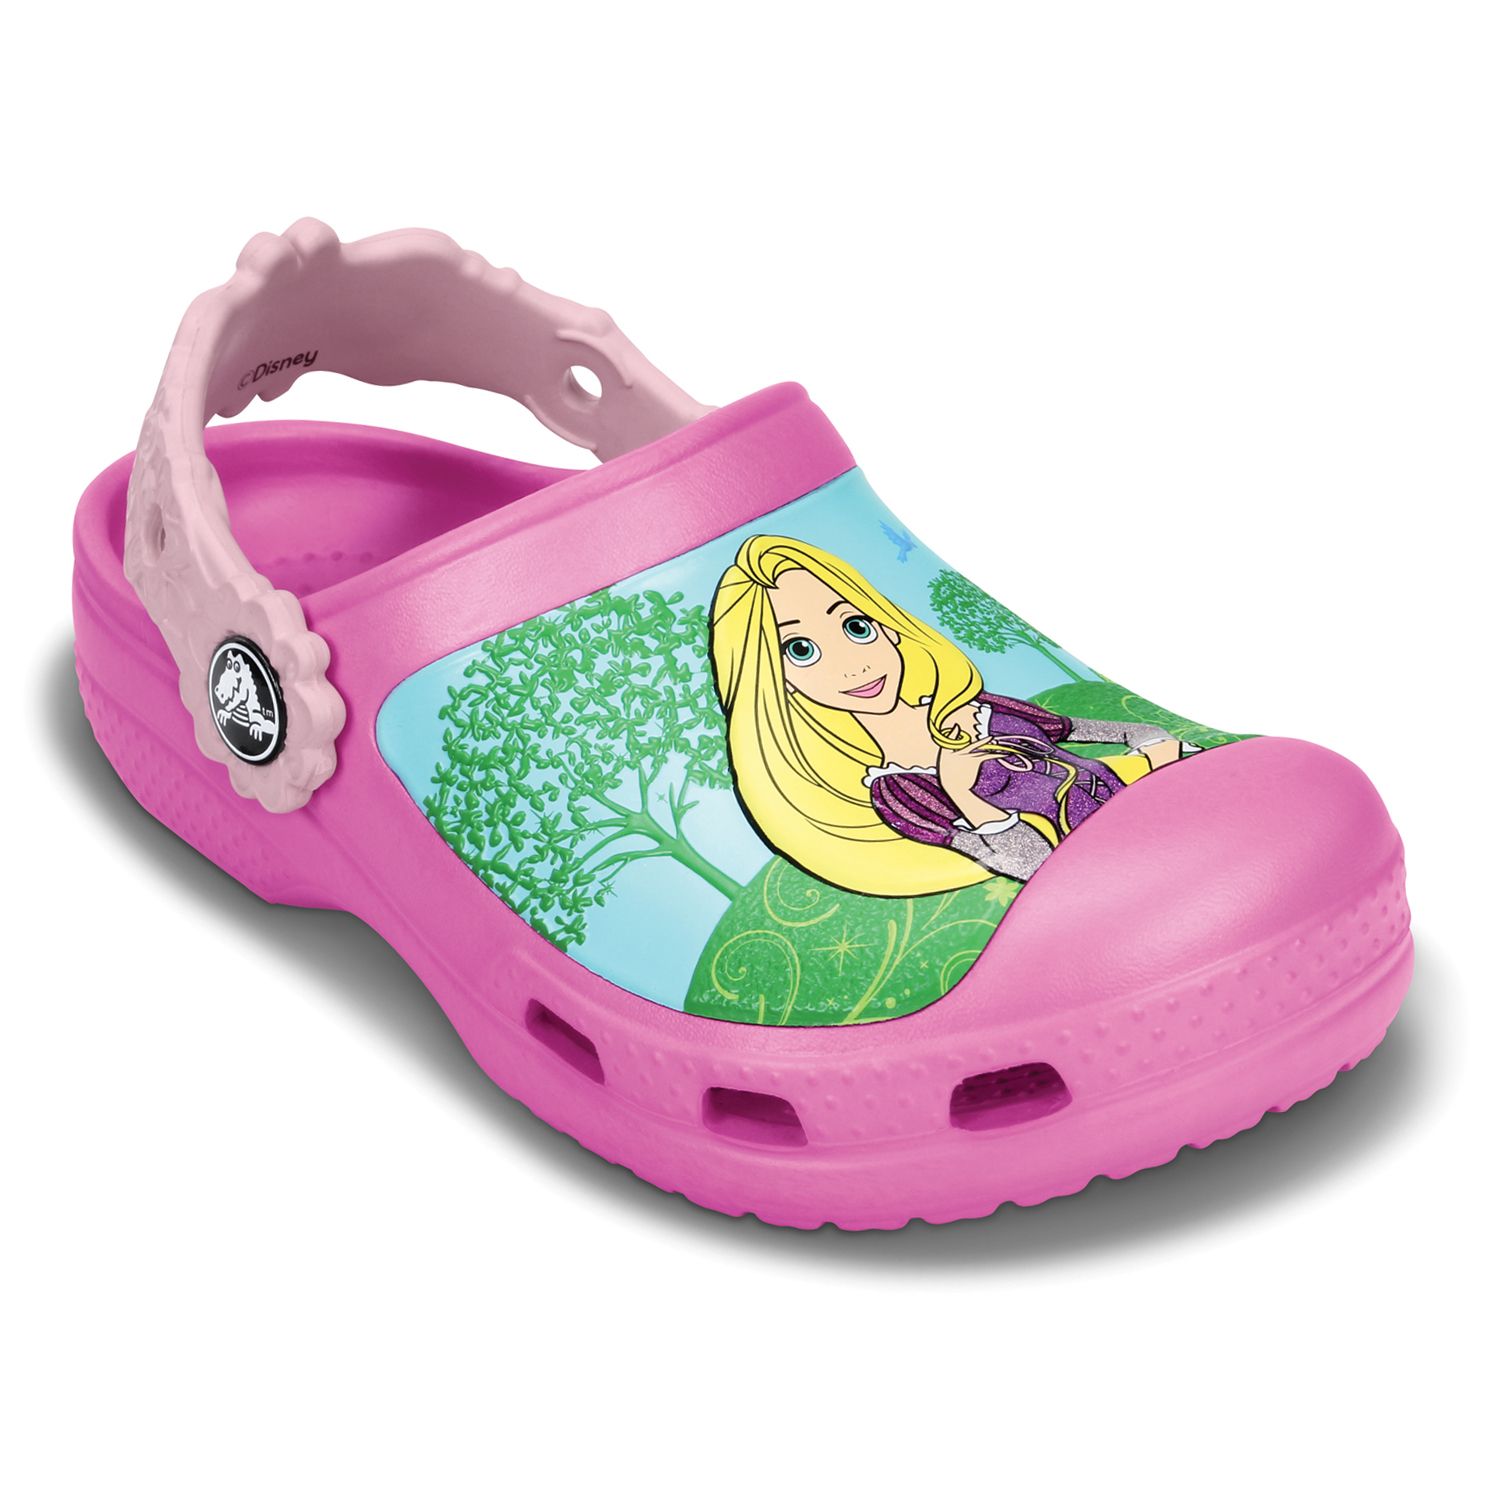 princess crocs size 10